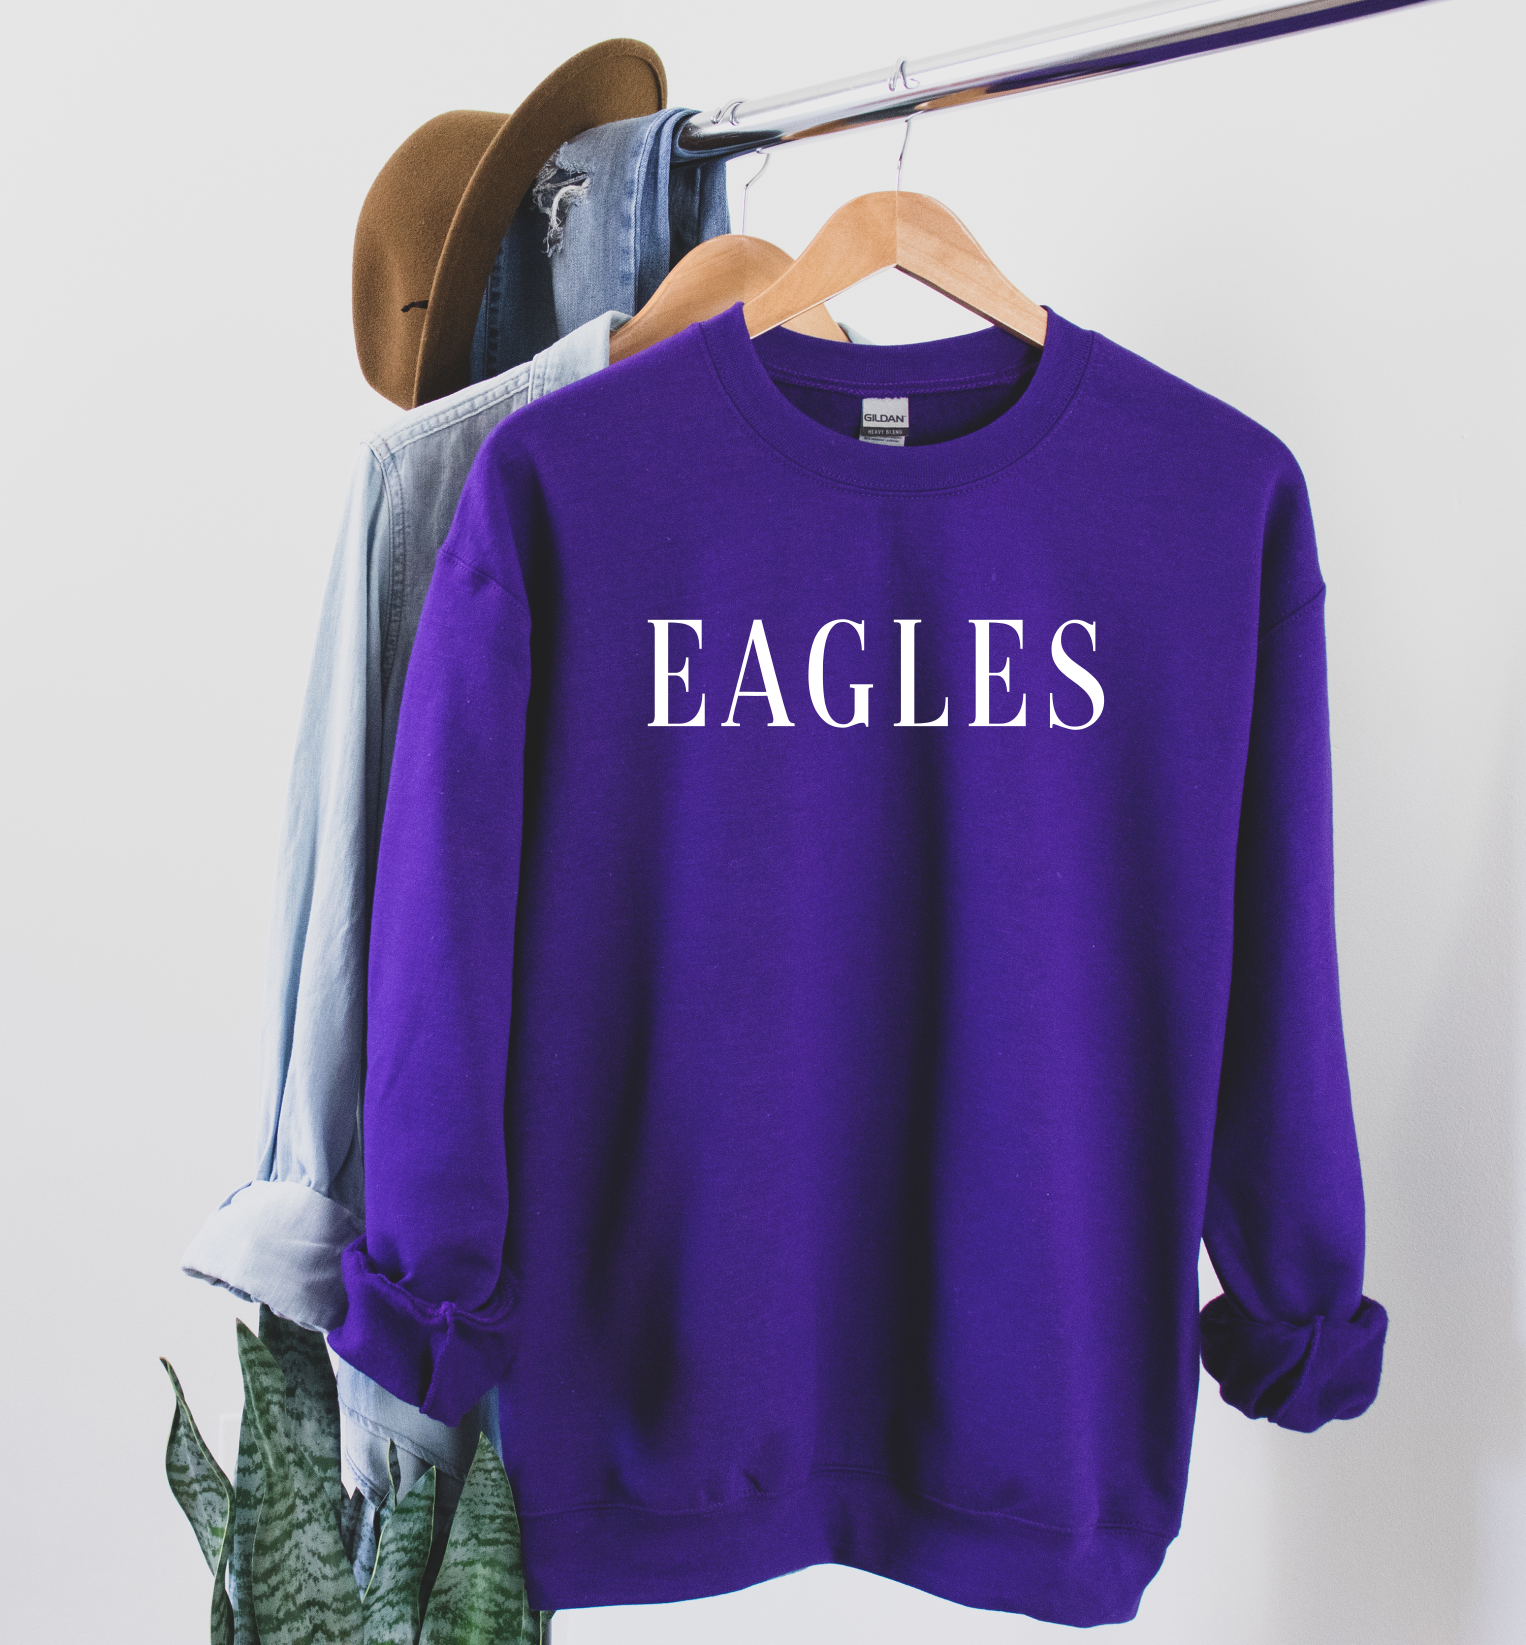 Eagles Crew Neck Sweater